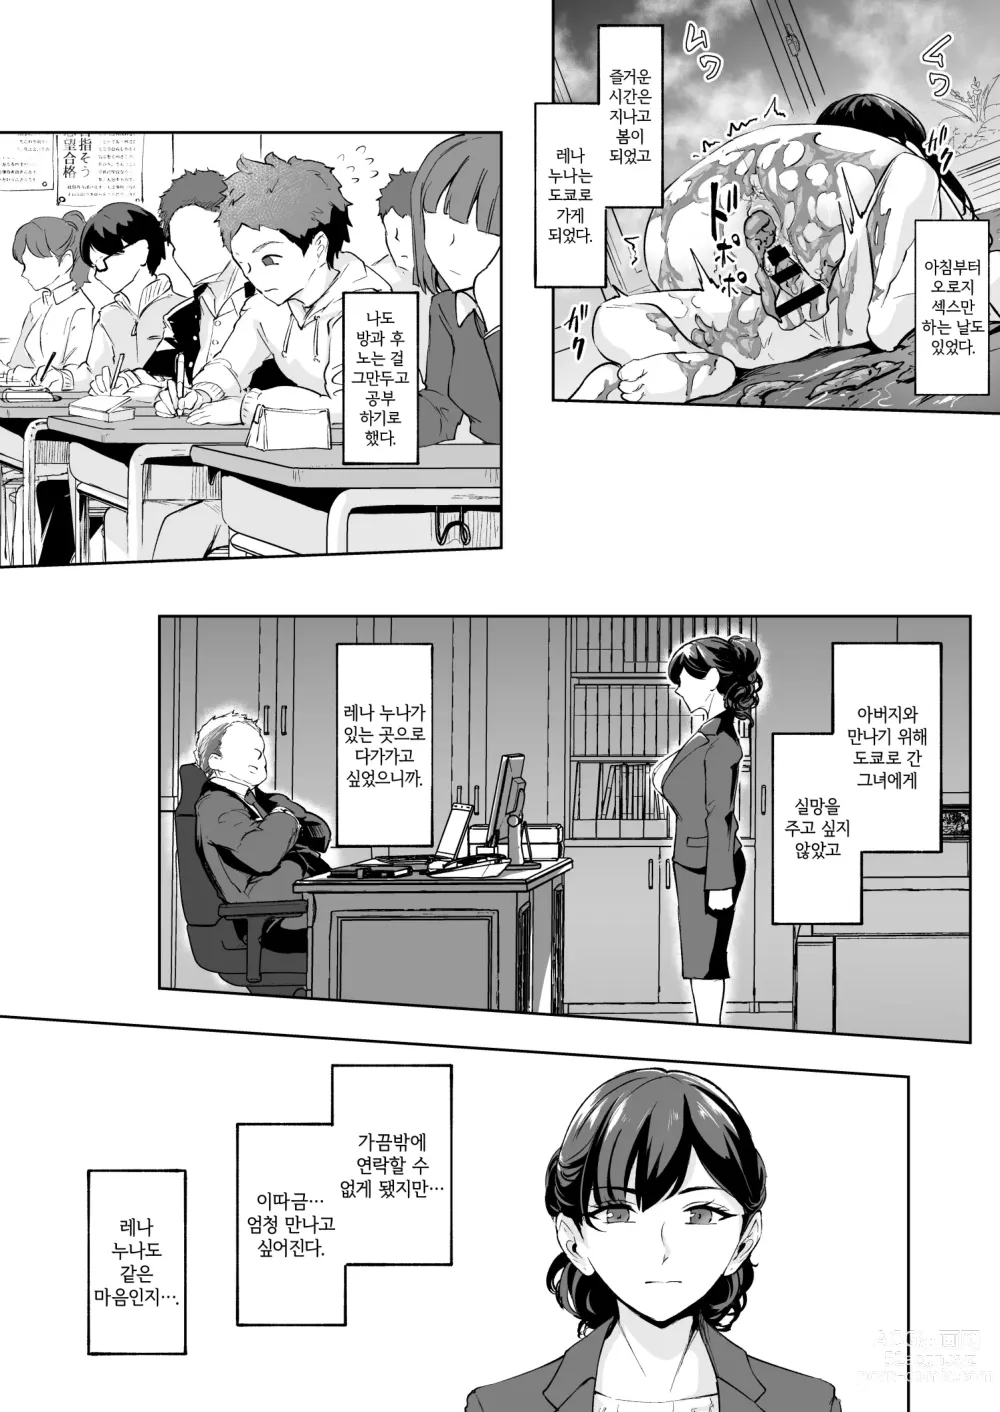 Page 43 of doujinshi 나타난 치녀는 연하킬러인 스카토로 변태였습니다 3